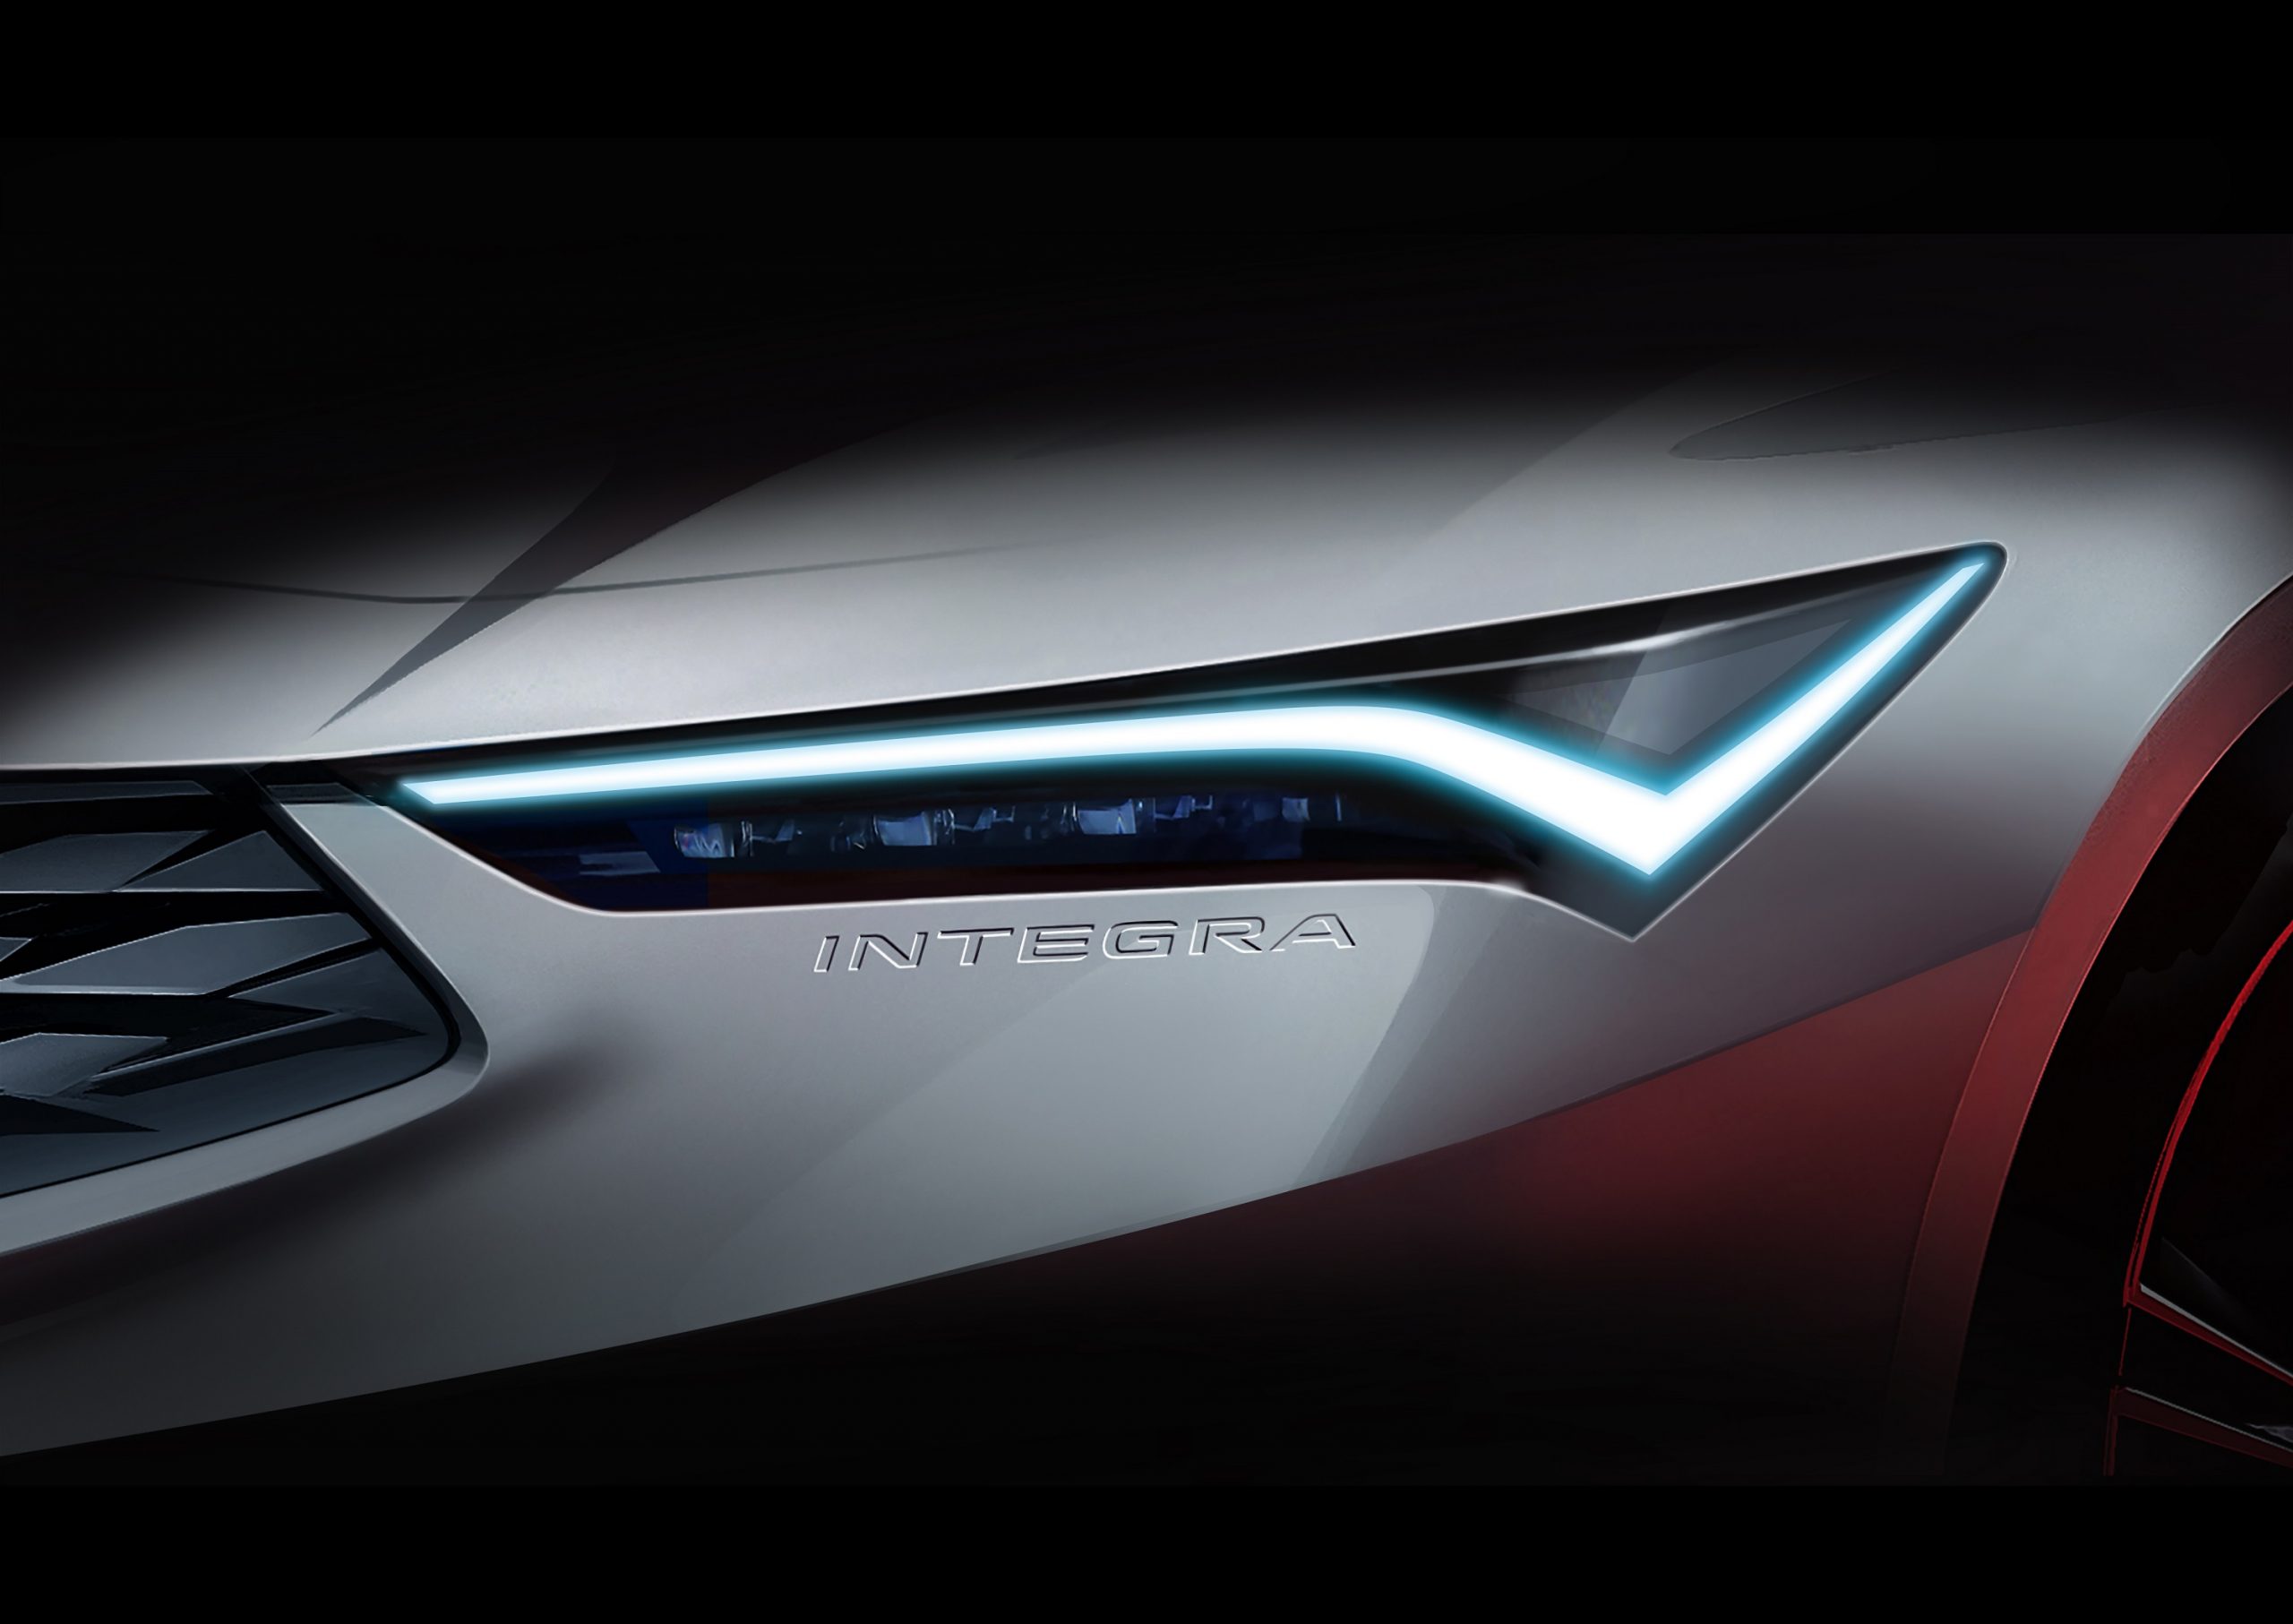 The headlight of the new Acura Integra